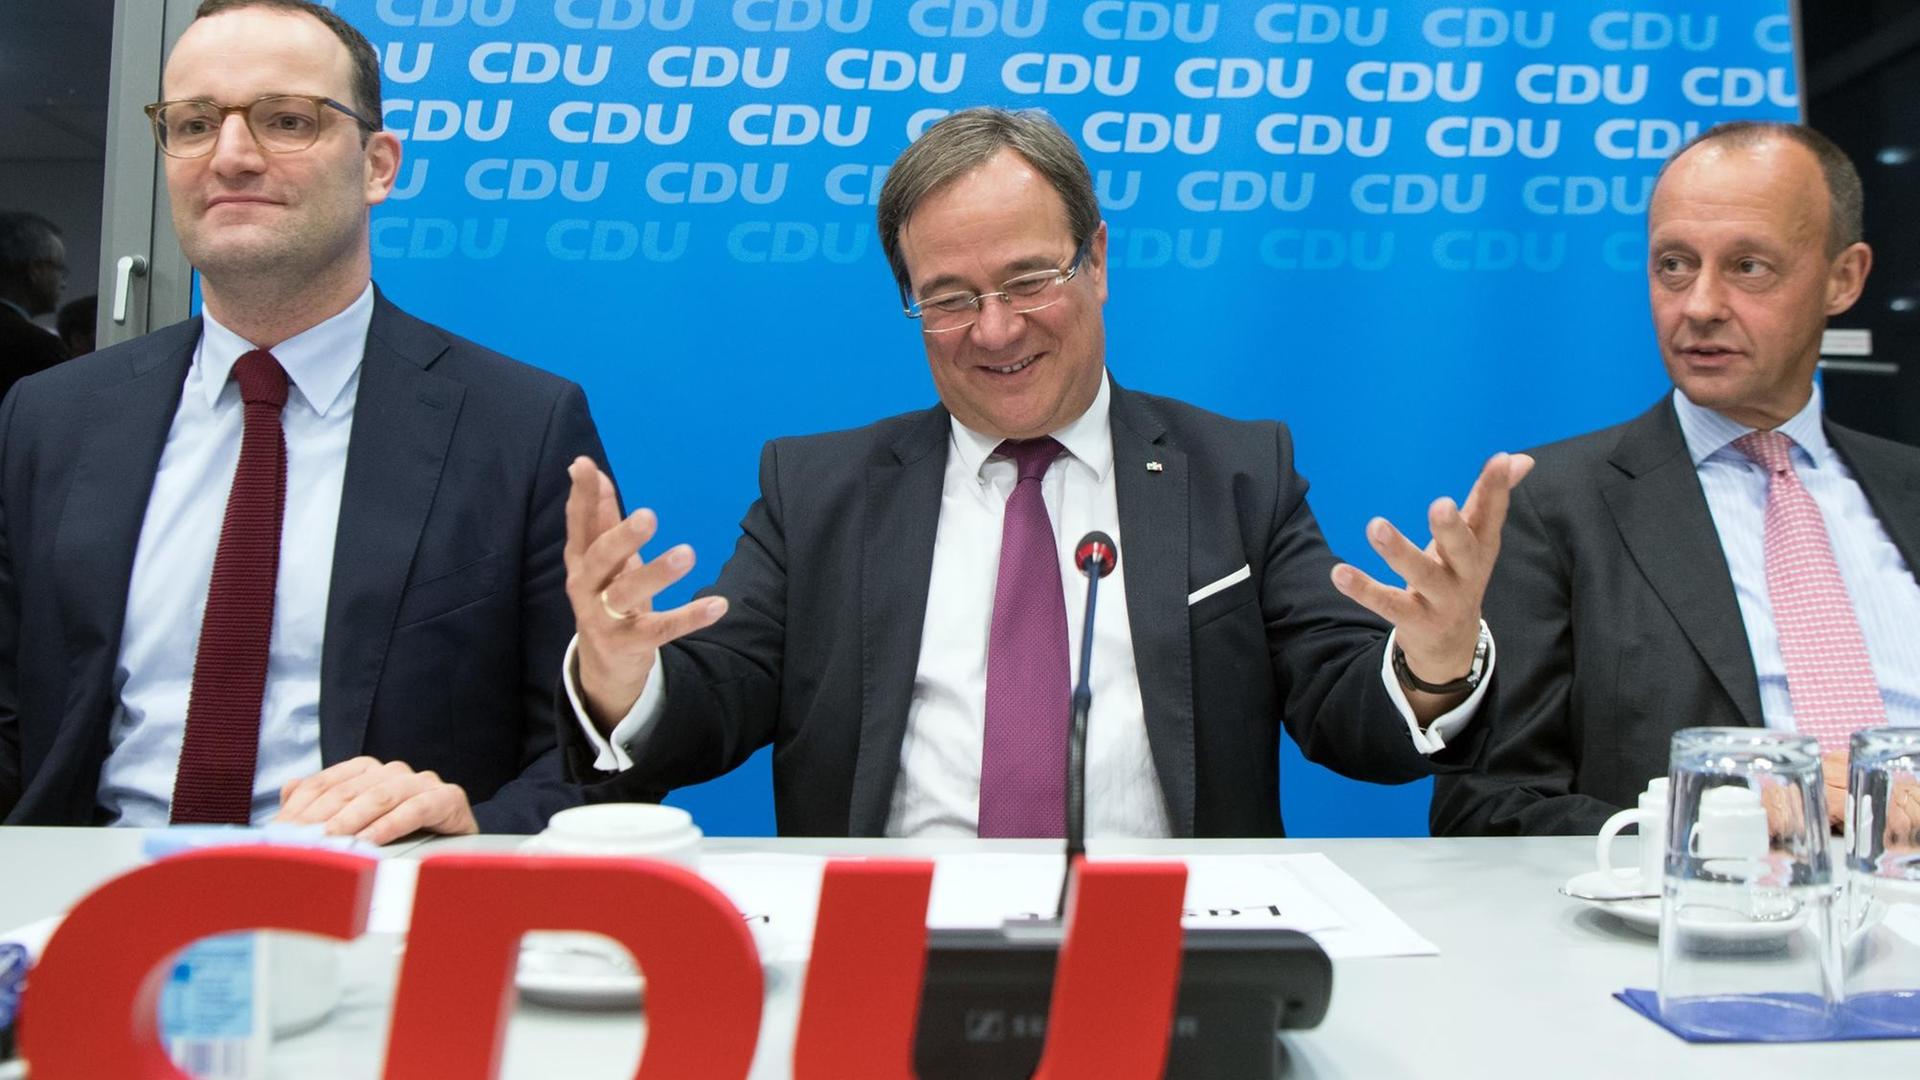 Jens Spahn, Armin Laschet und Friedrich Merz sitzen an einem Tisch vor und hinter CDU-Parteilogos.